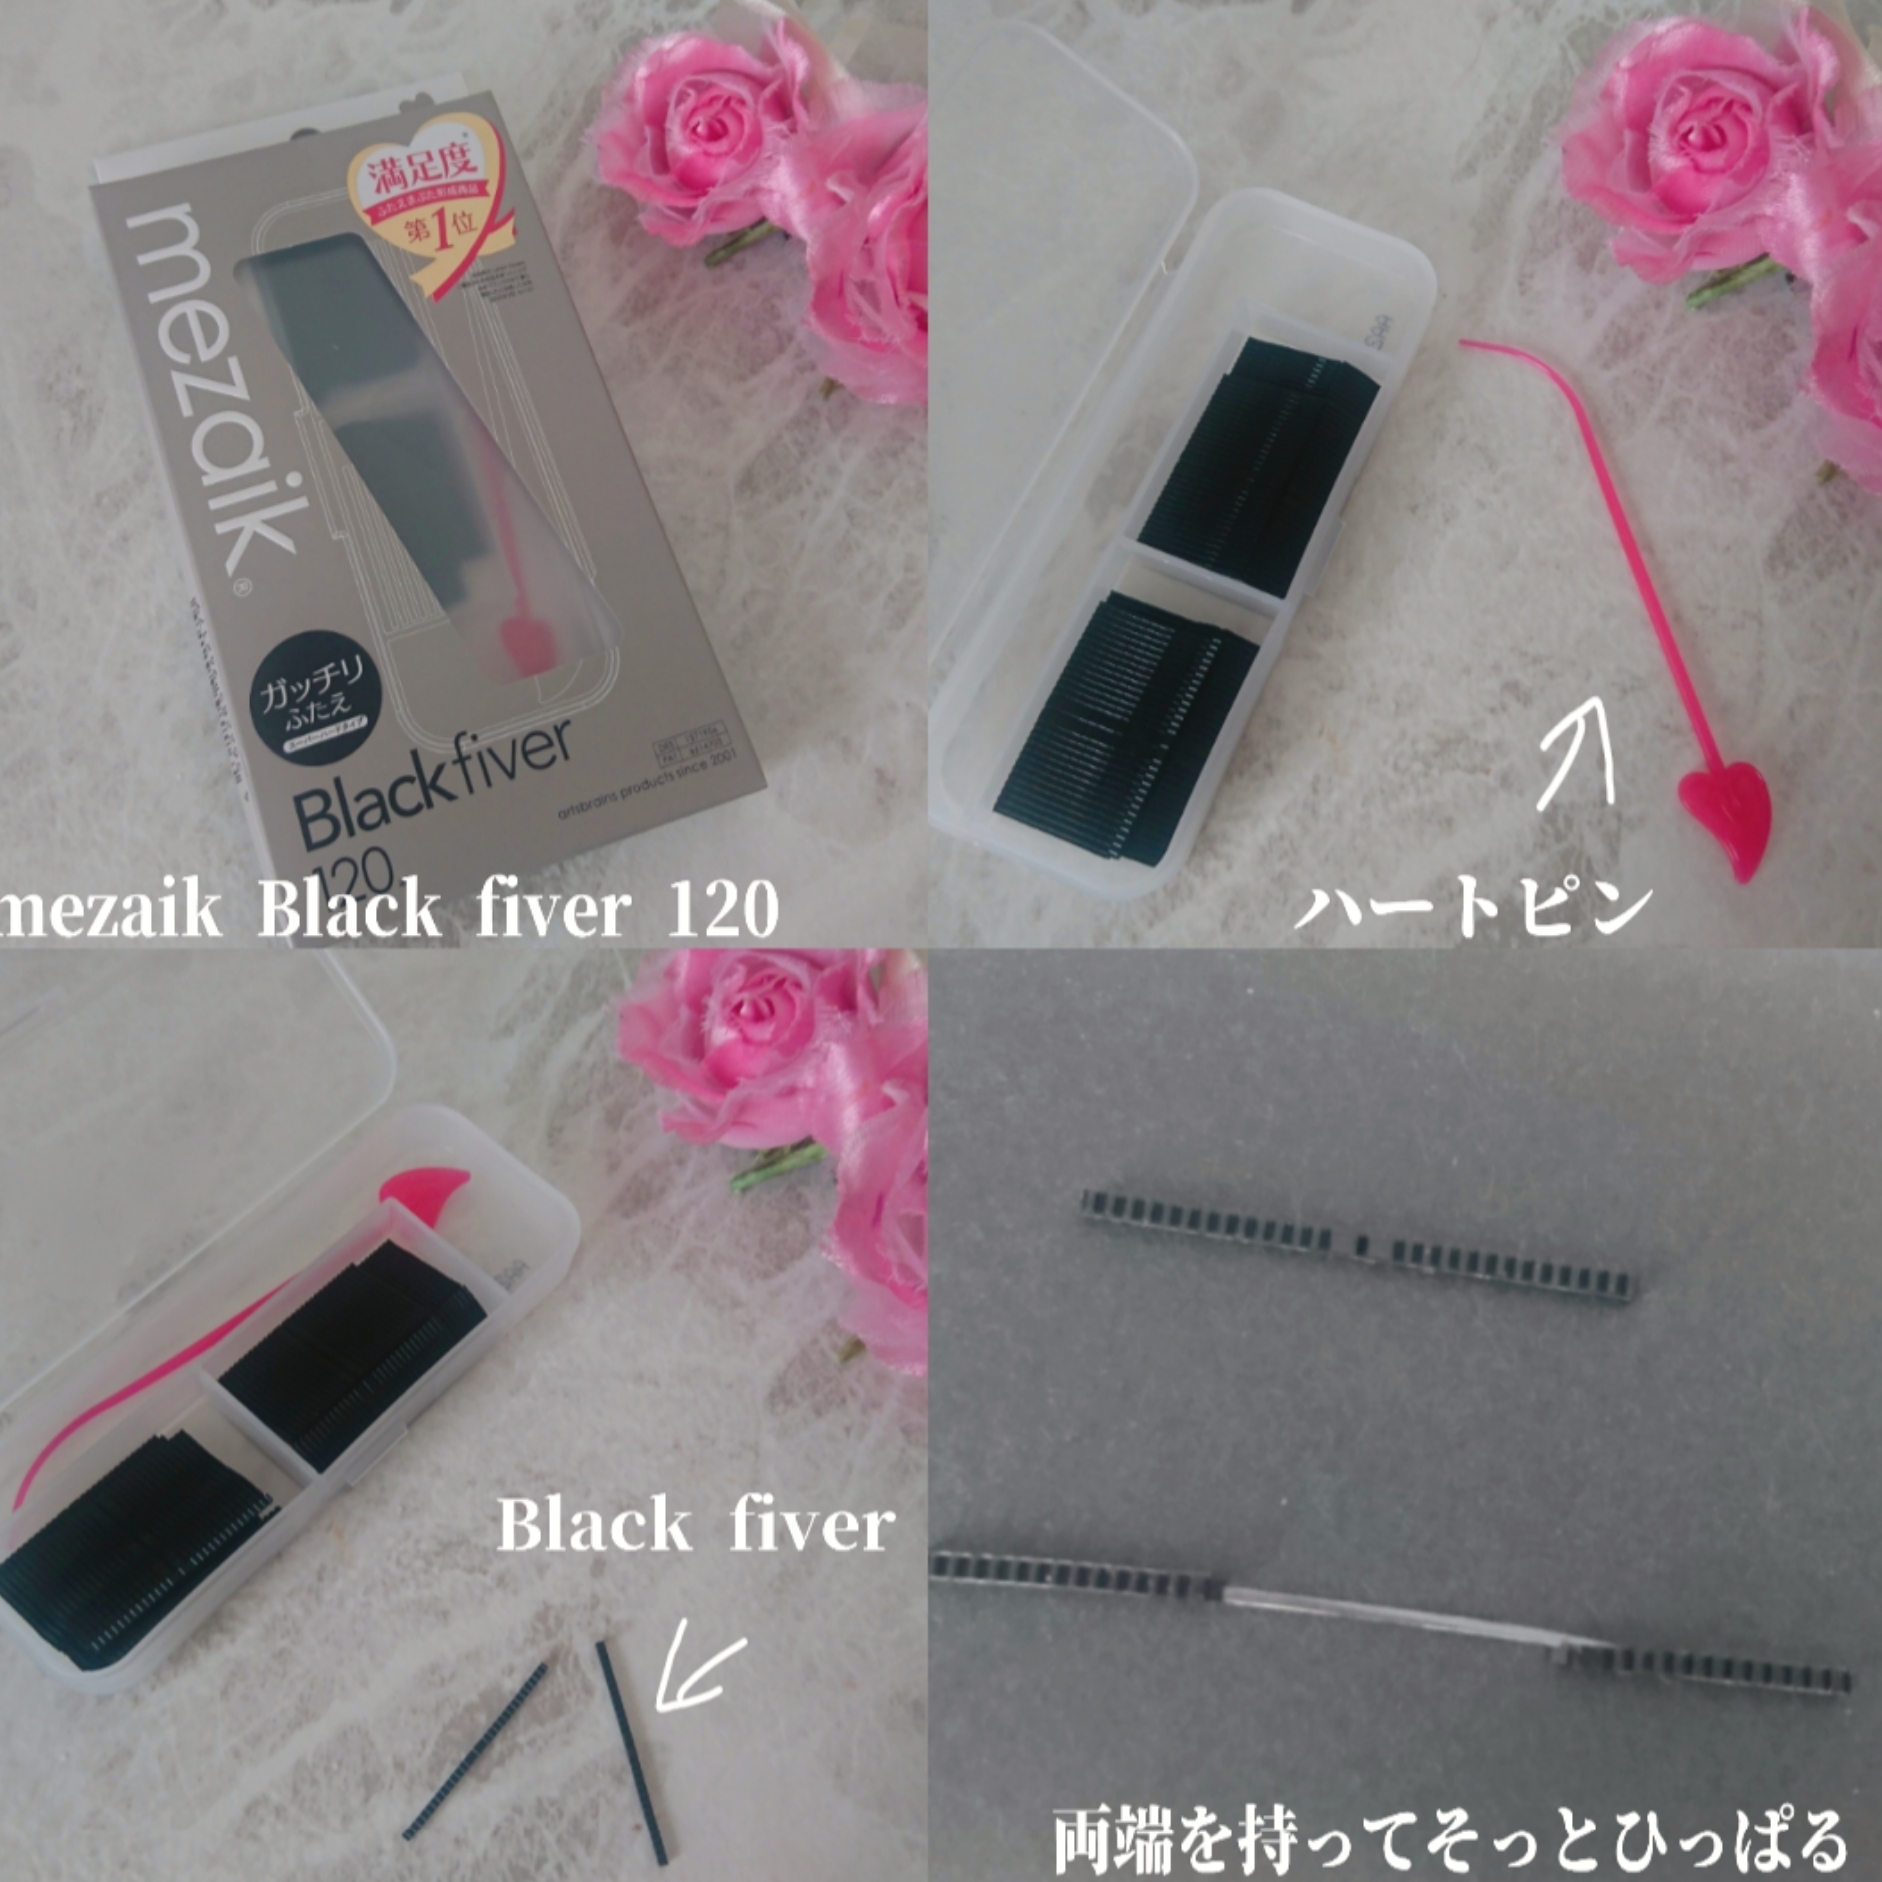 mezaik Black fiver120<下地&カッター付き>
スーパーハードタイプ 120本入 ¥2,783(税込)の良い点・メリットに関するYuKaRi♡さんの口コミ画像2